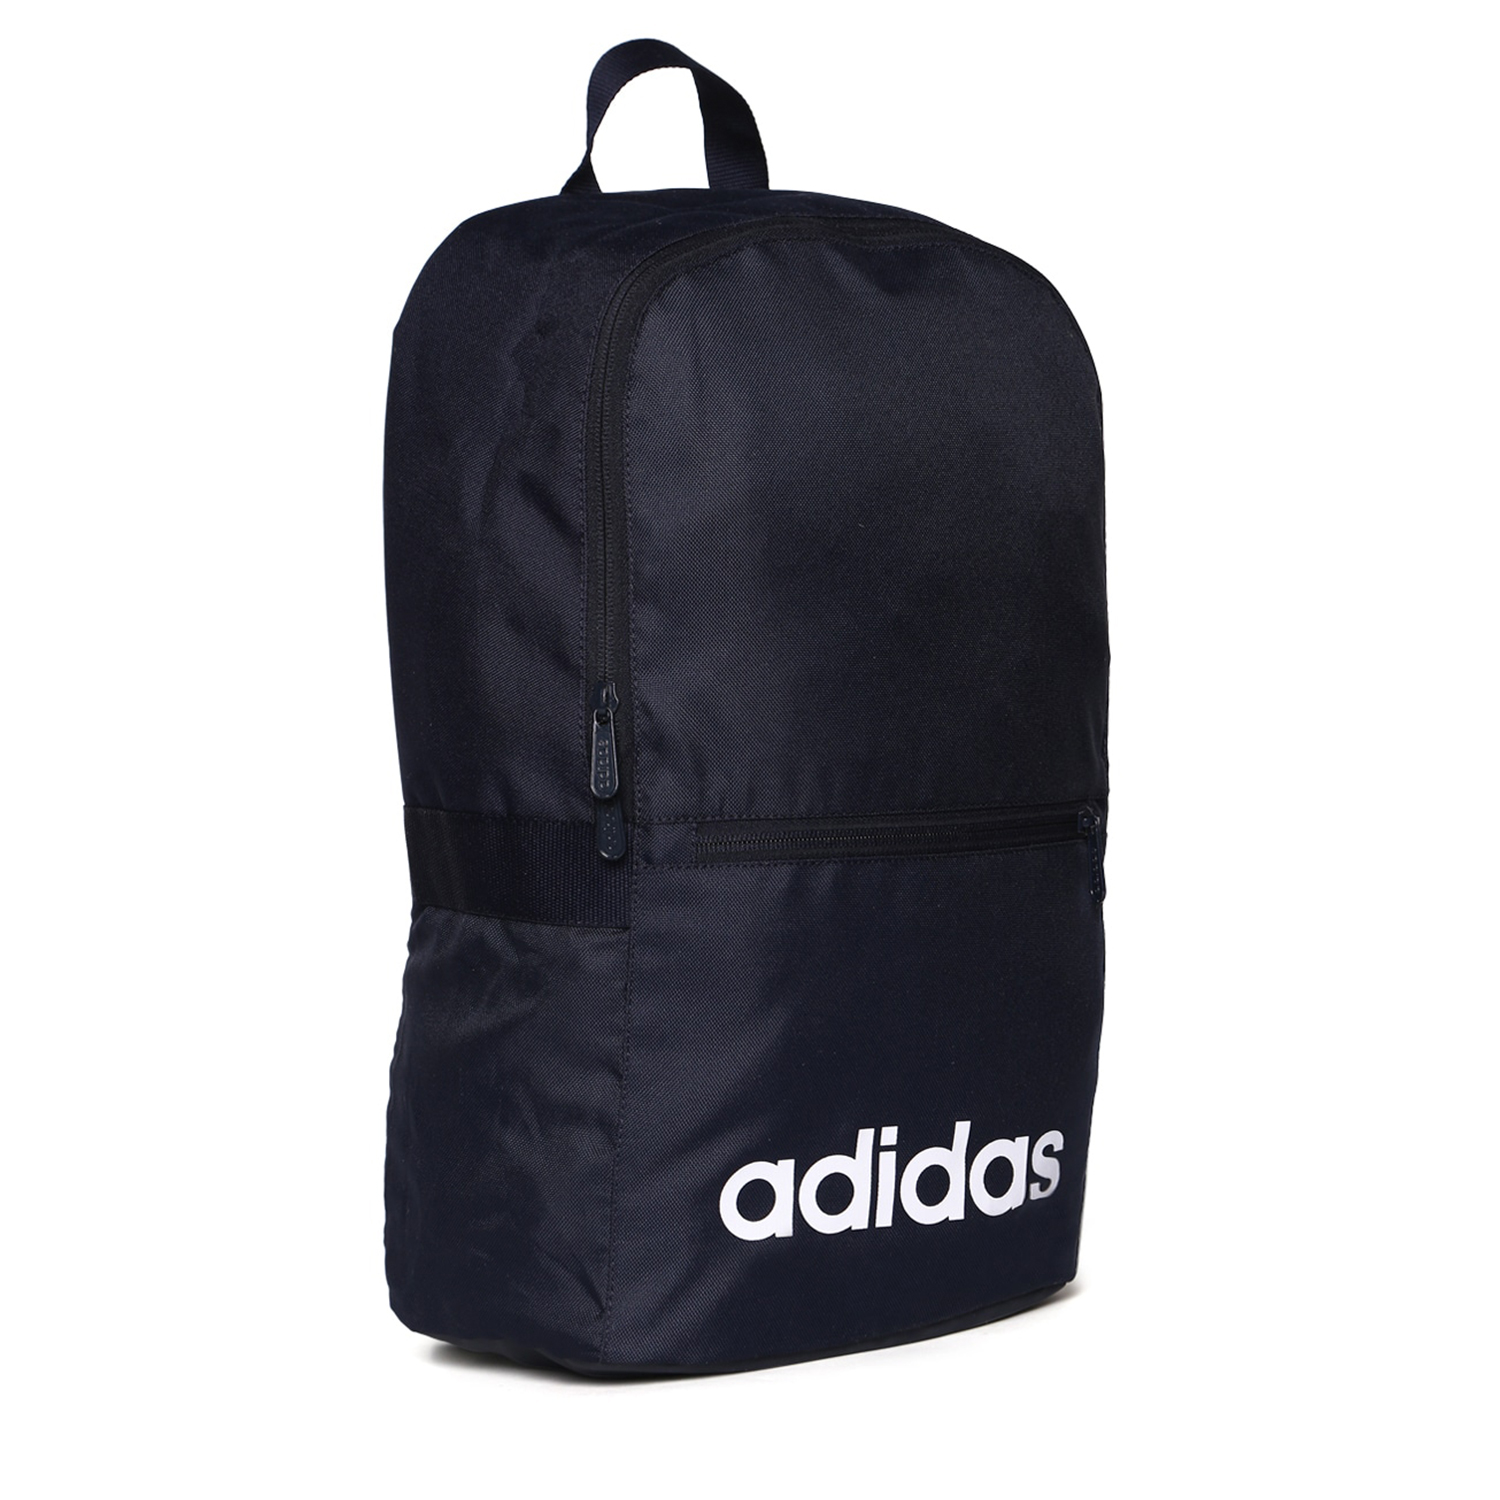 Adidas Unisex Backpack